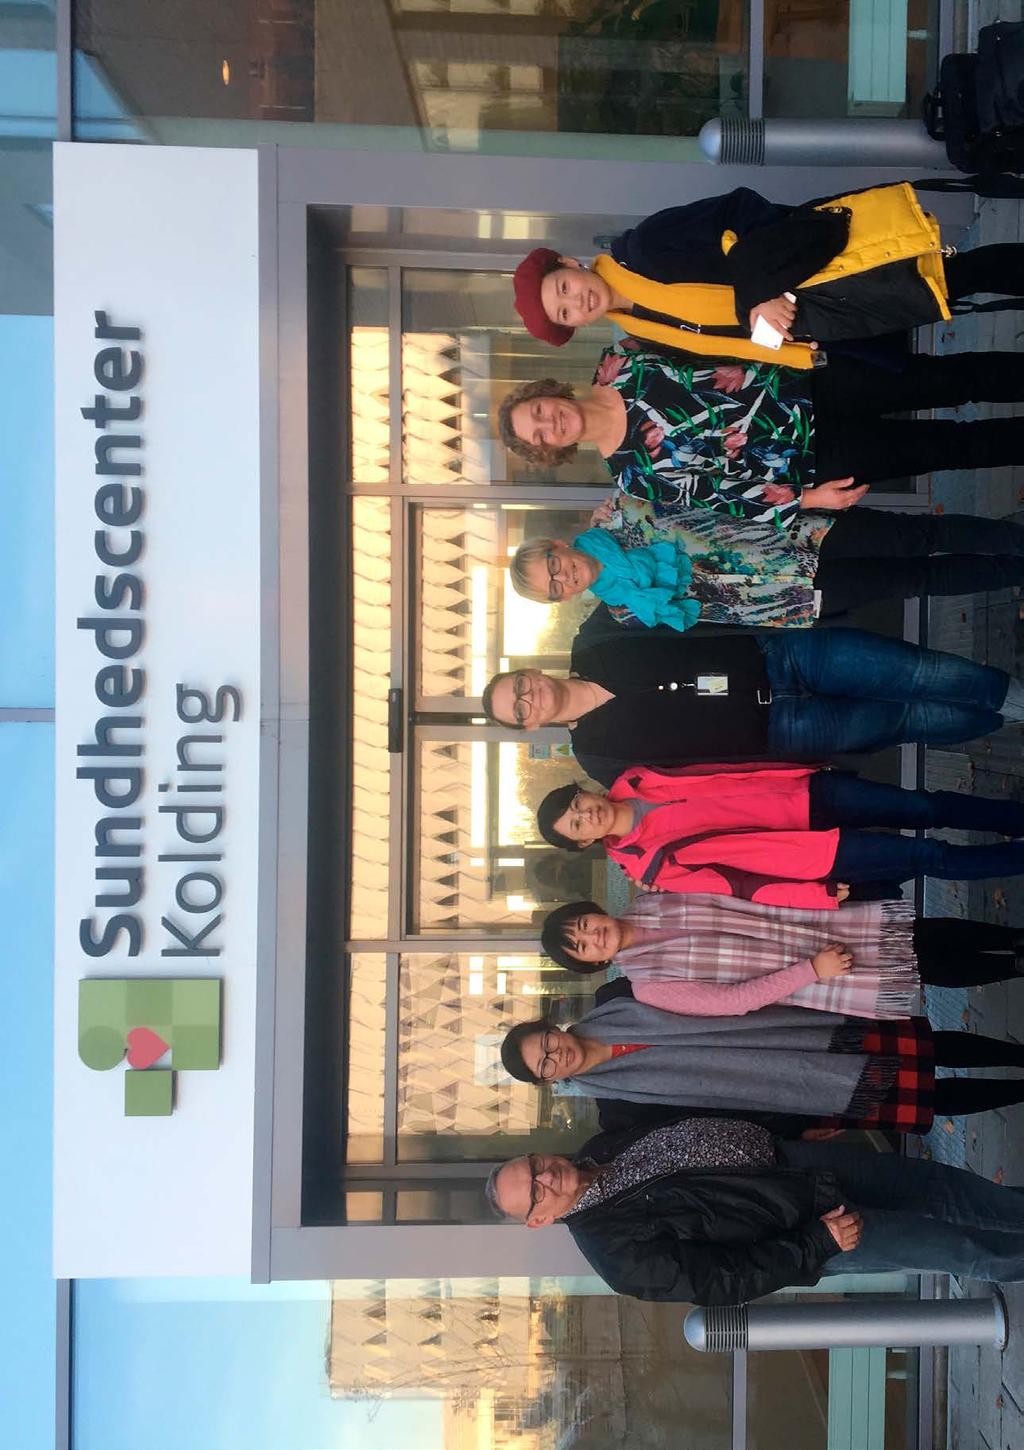 I Kolding kommune var der besøg på Sundhedscentret, hvor repræsentanter fra forskellige faggrupper